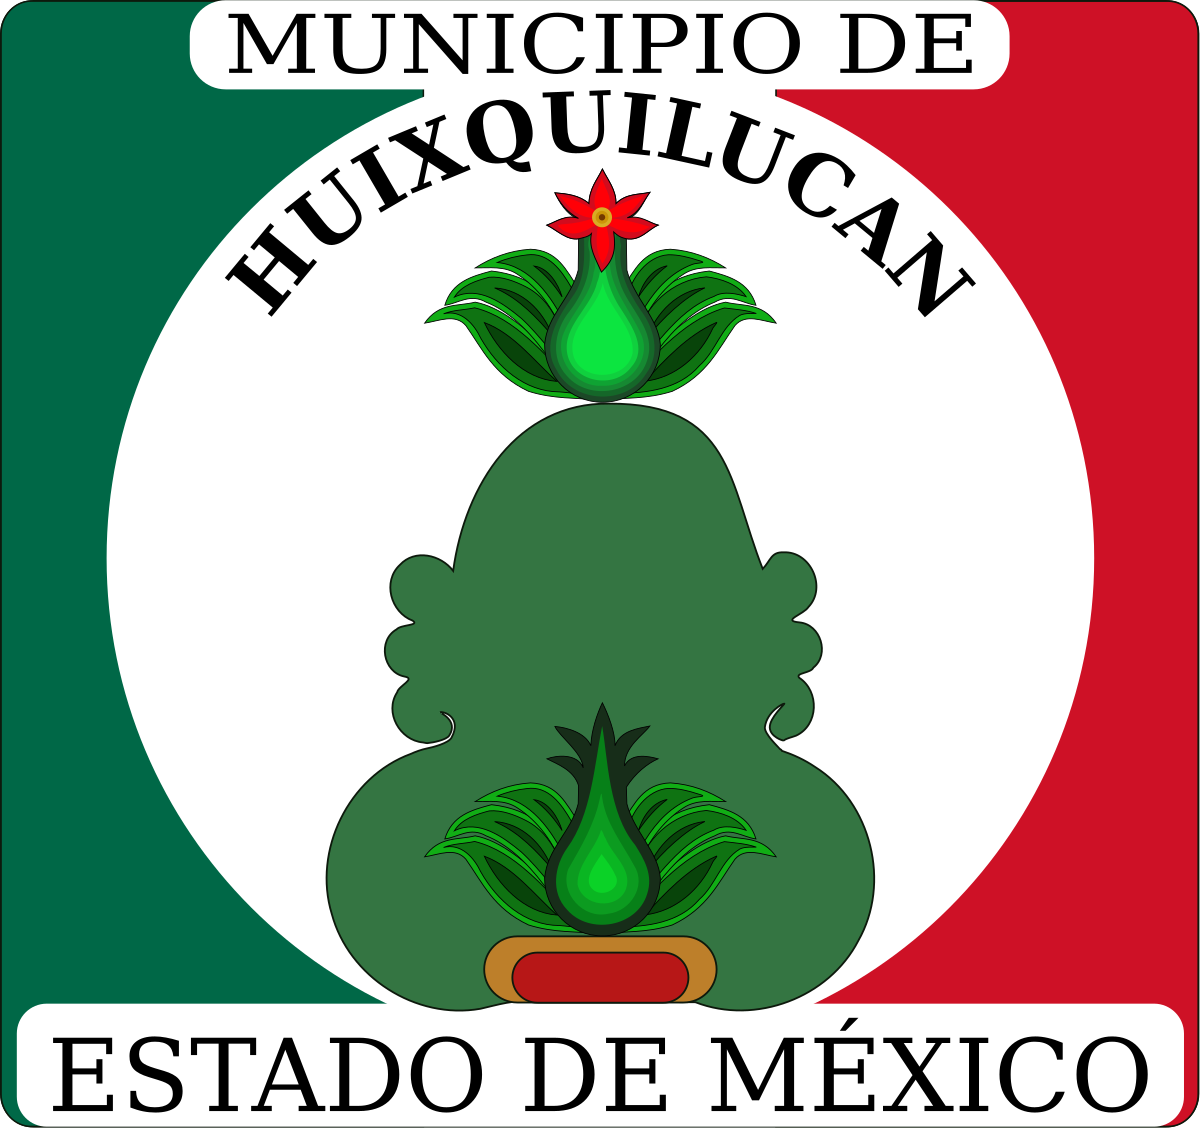 City of Huixquilucan